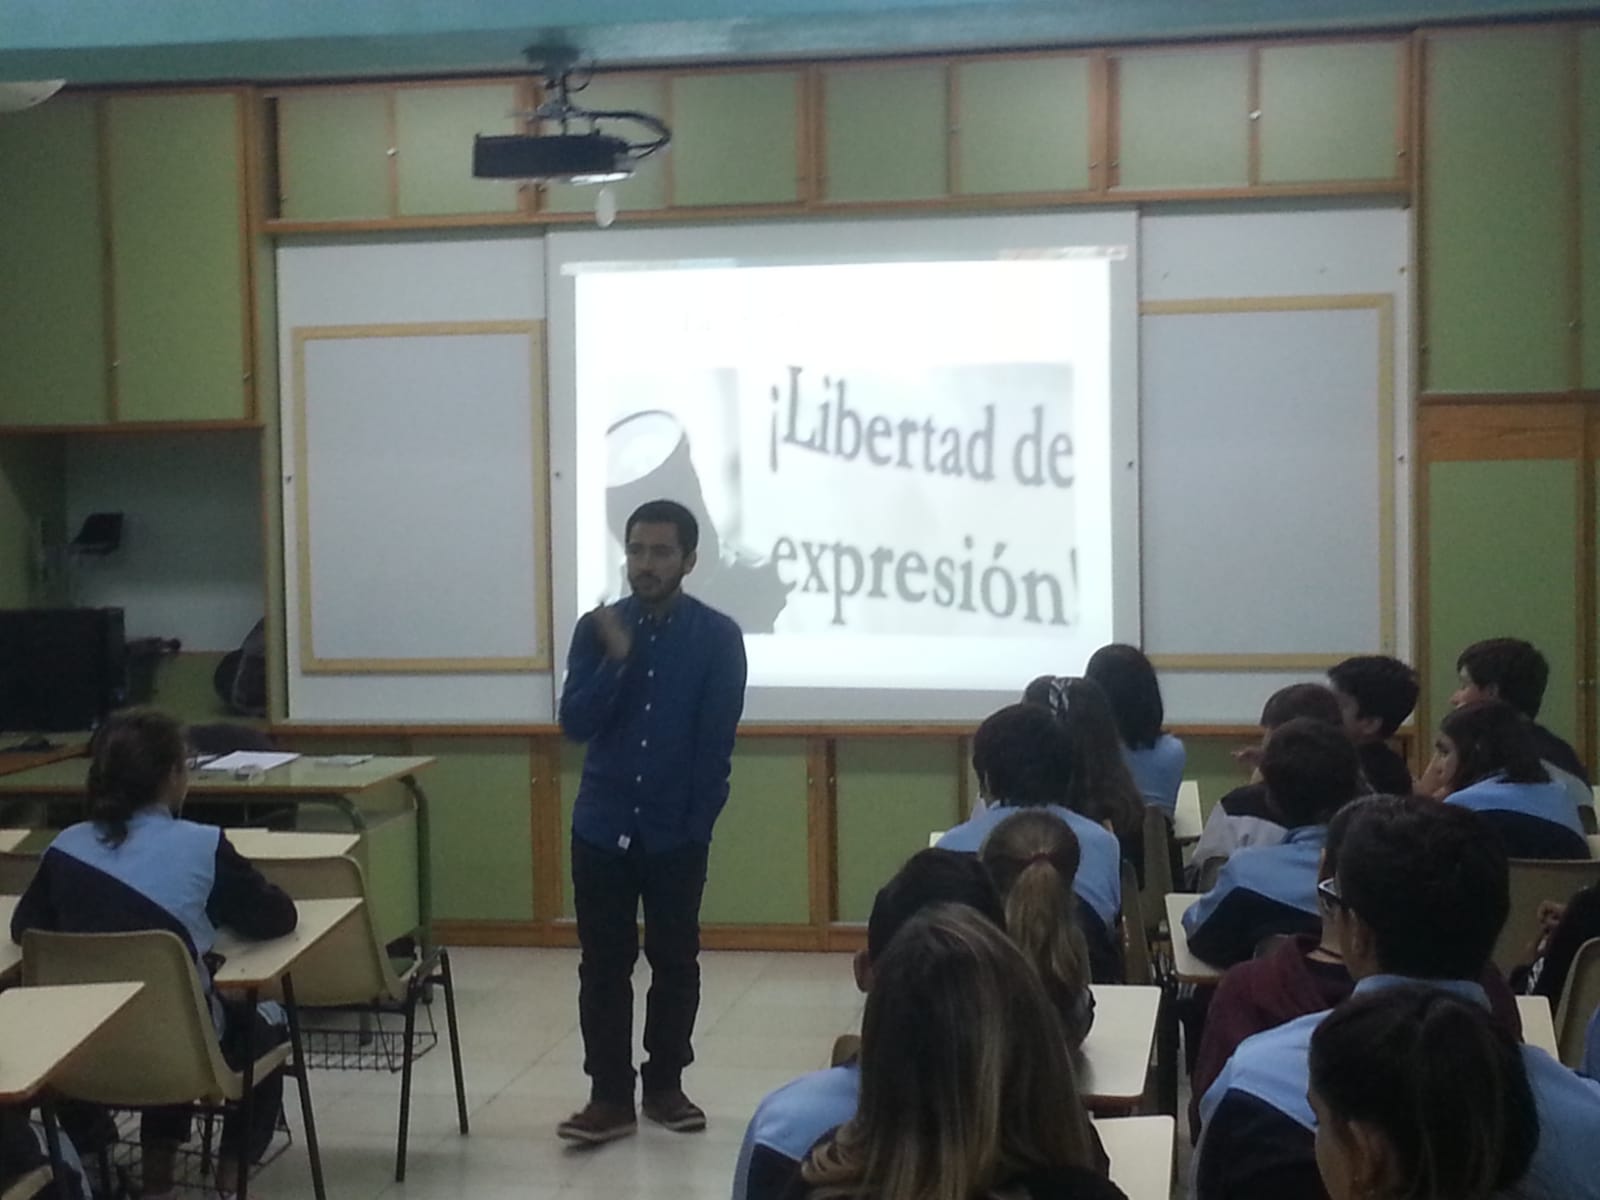 Nuestro exalumno Alejandro Nieto visita Idéame con su ponencia sobre libertad de expresión